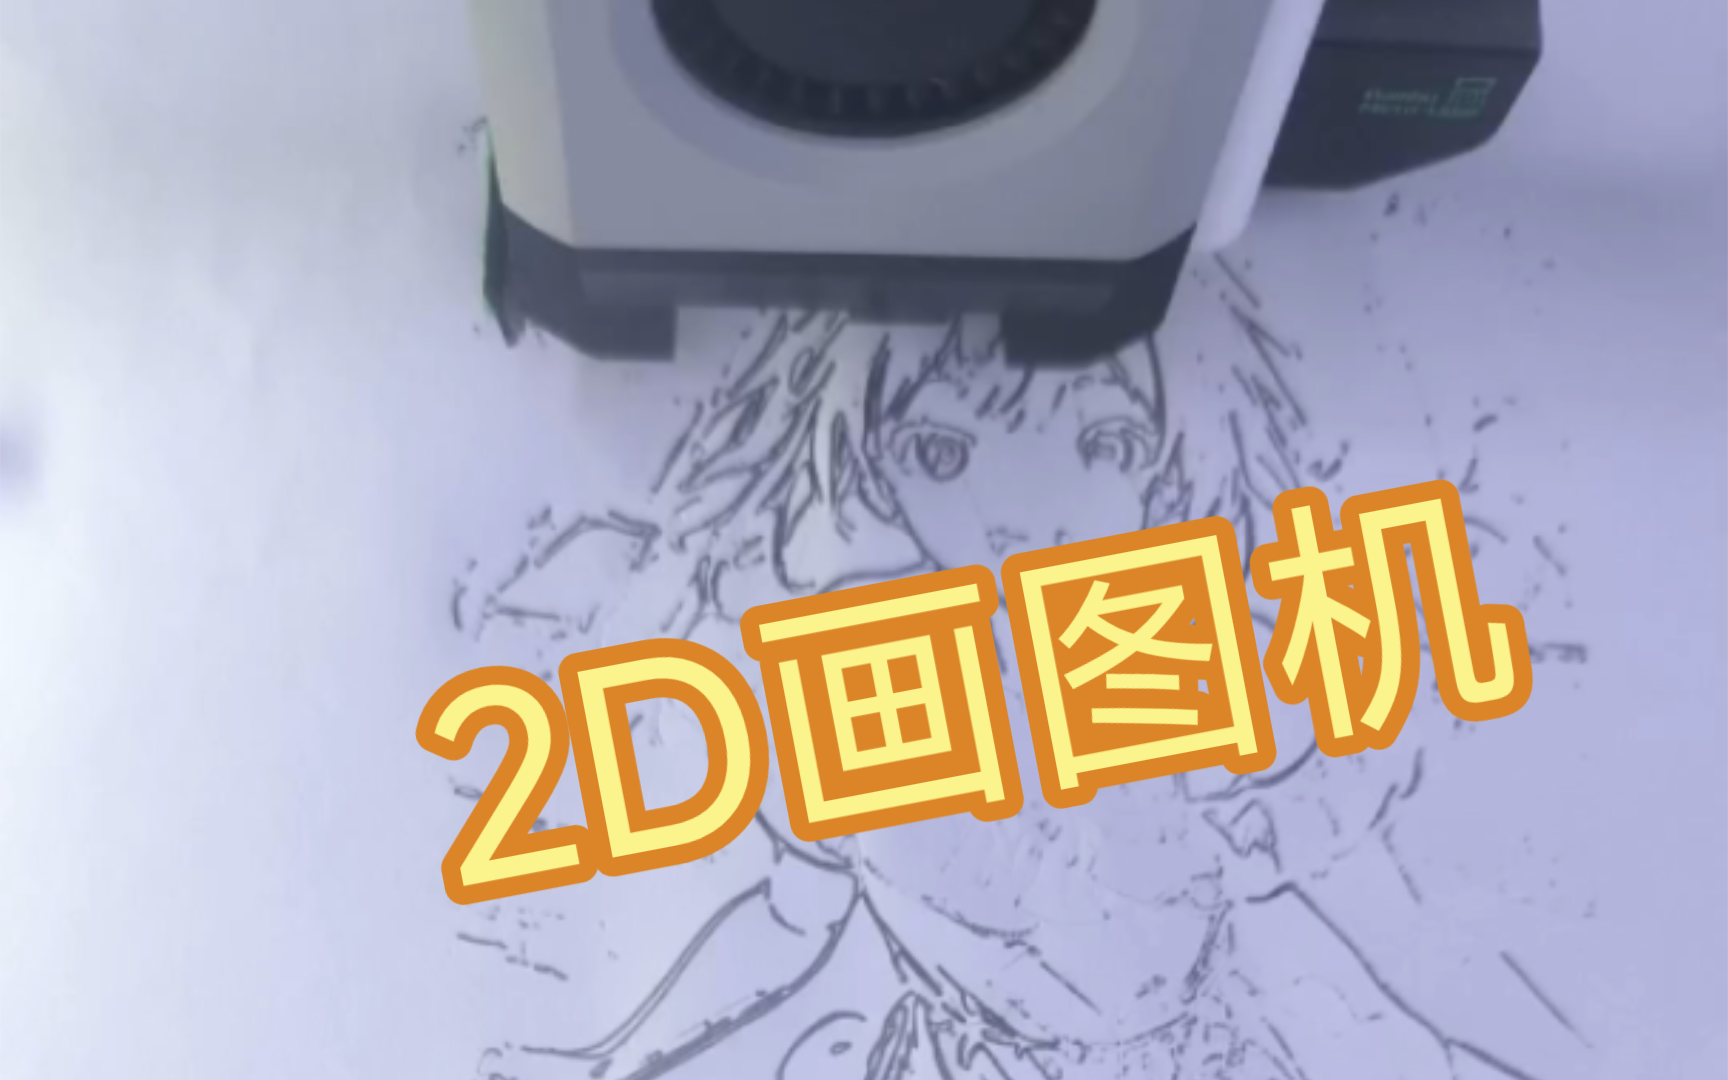 3D打印机改2D画图机